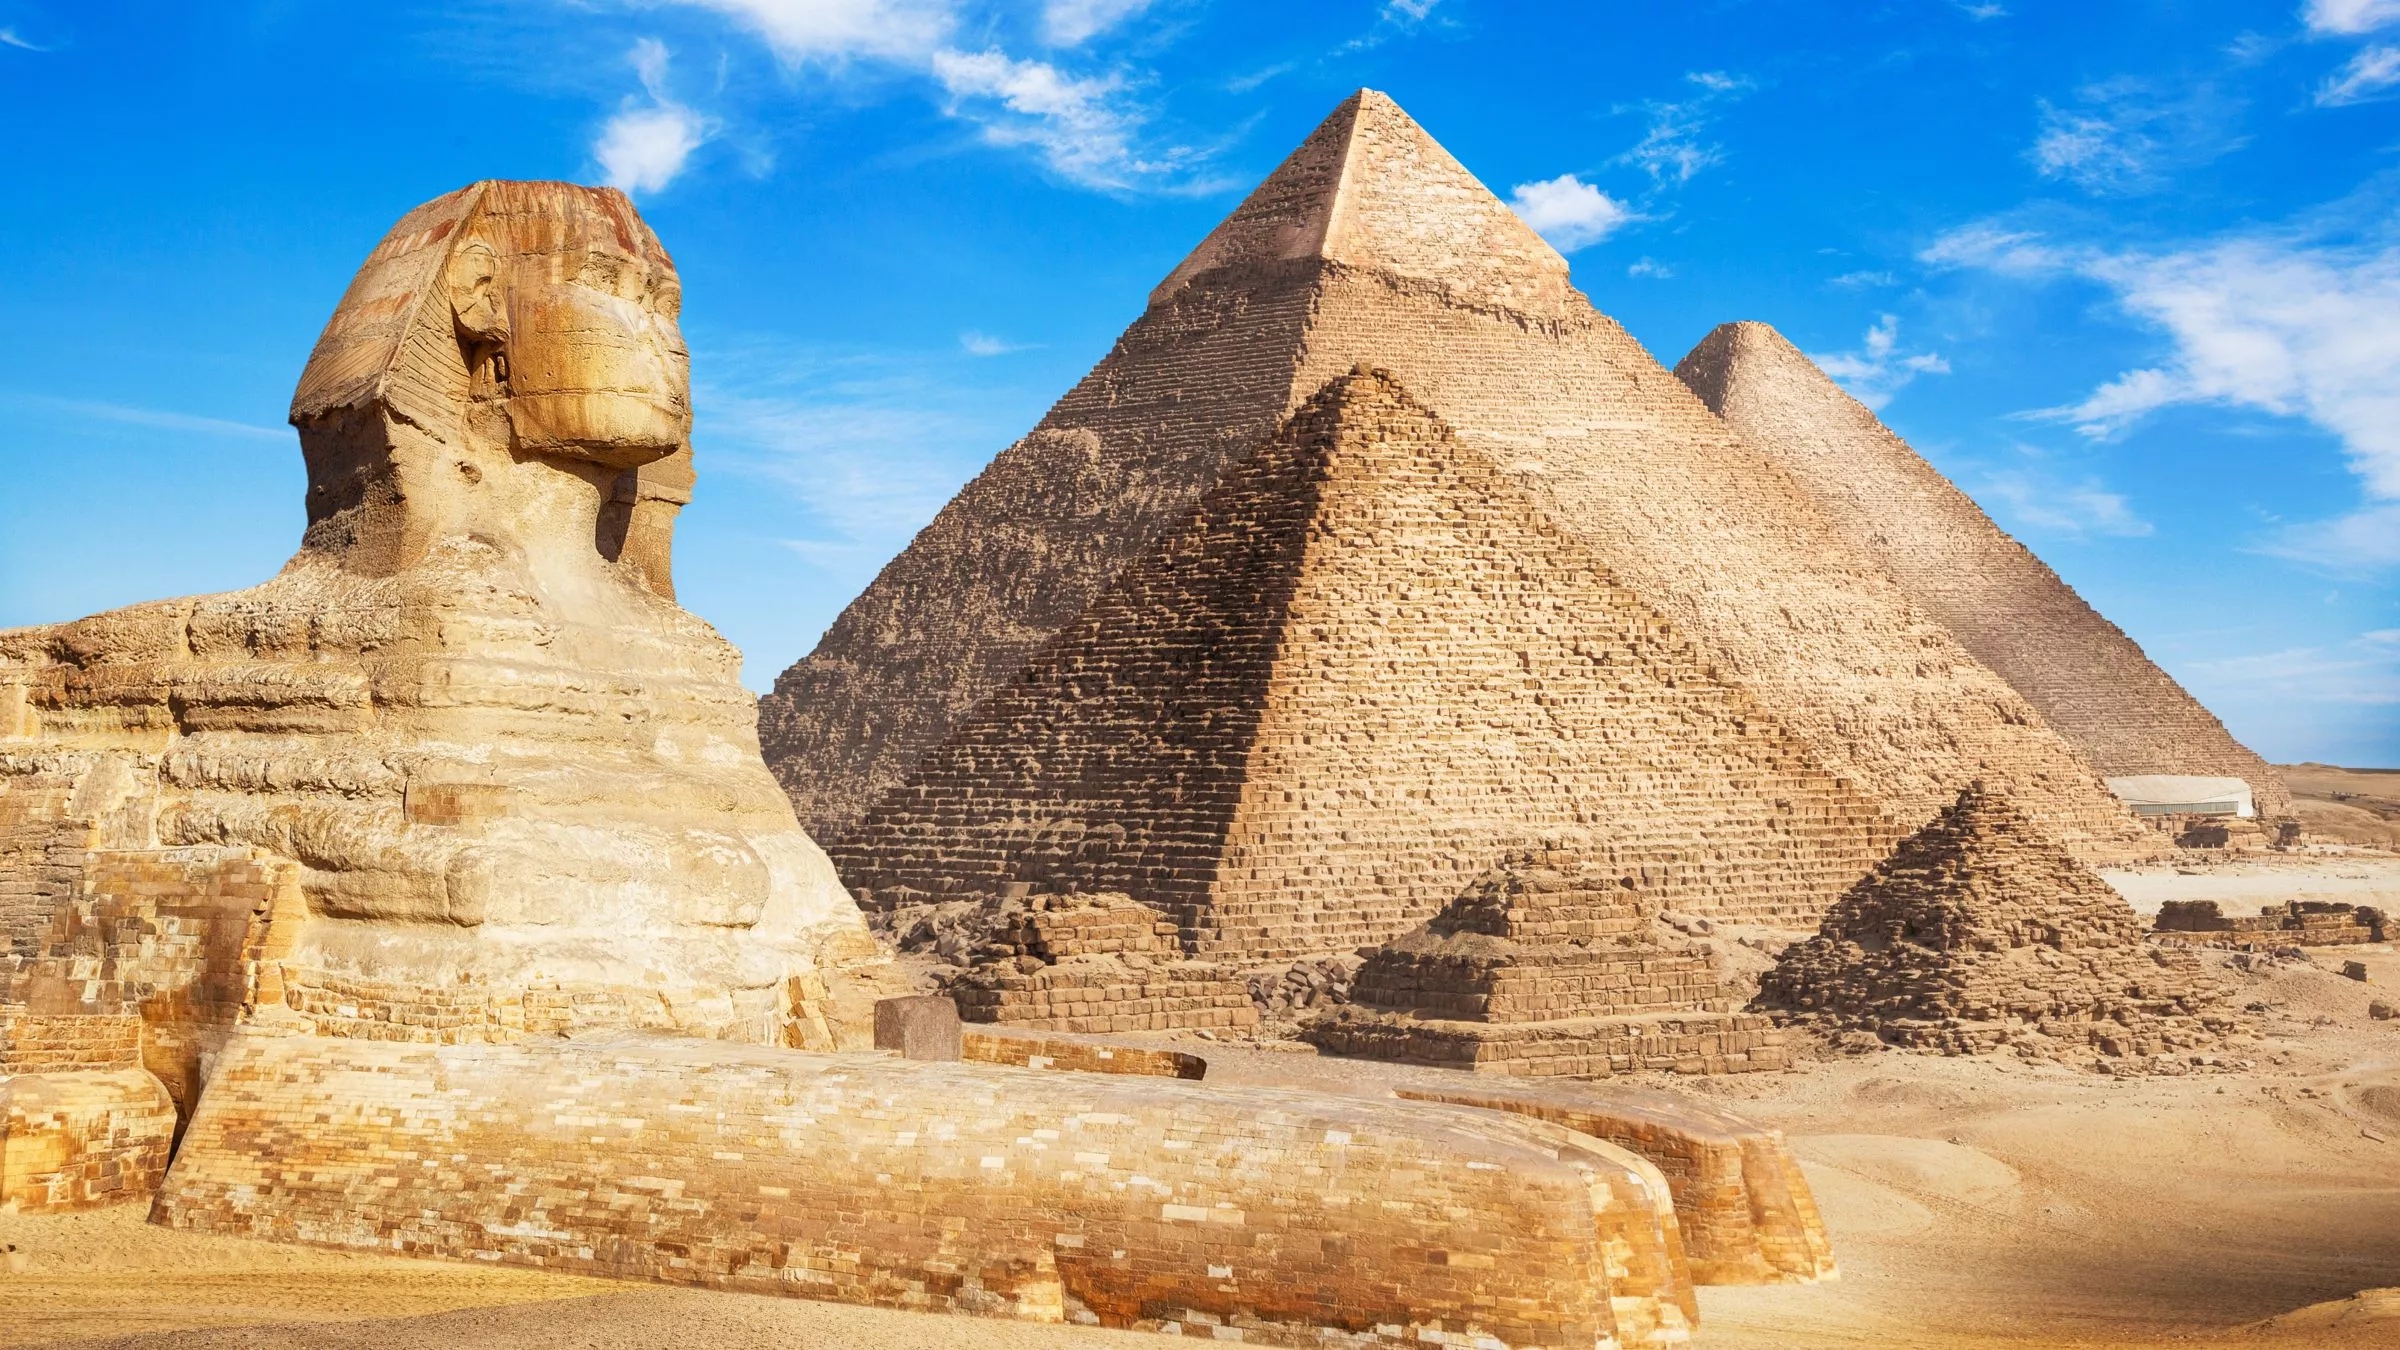 Ebenso imposant wie die Pyramiden von Gizeh: die 20 Meter hohe und 74 Meter lange Sphinx, die zeitgleich mit den Pyramiden erbaut wurde © Adobestock/merydolla